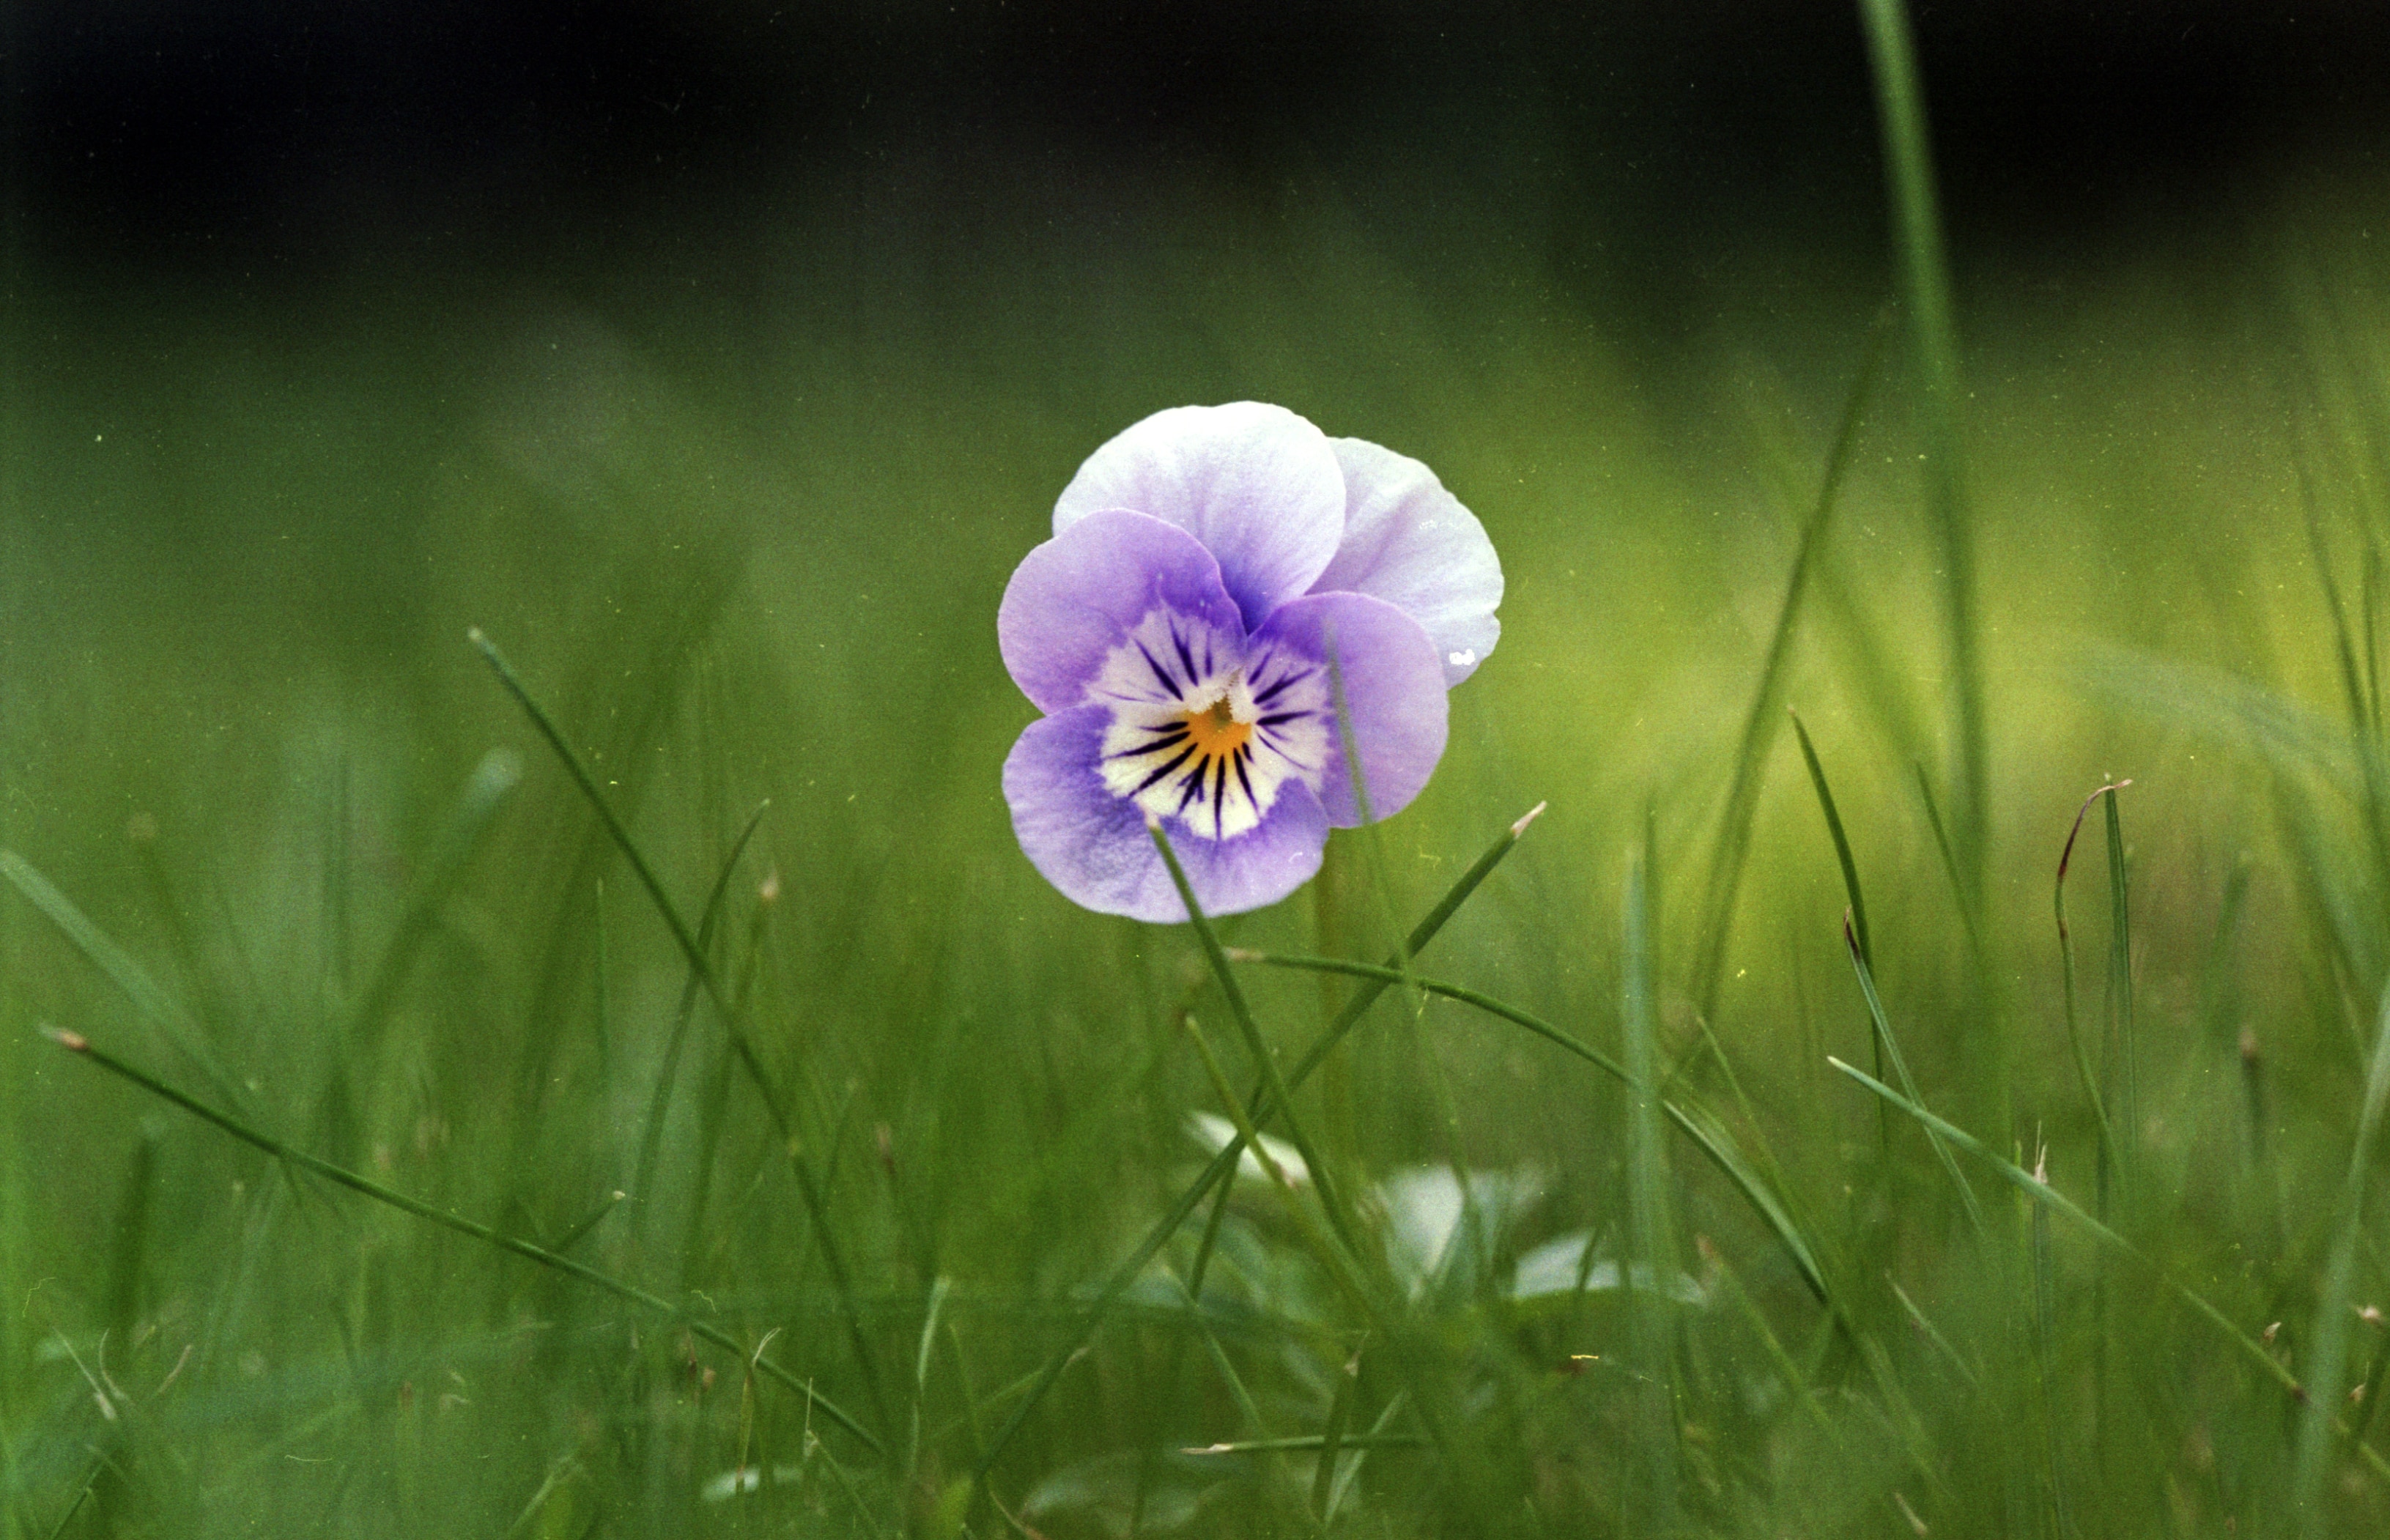 Violet flower in grass